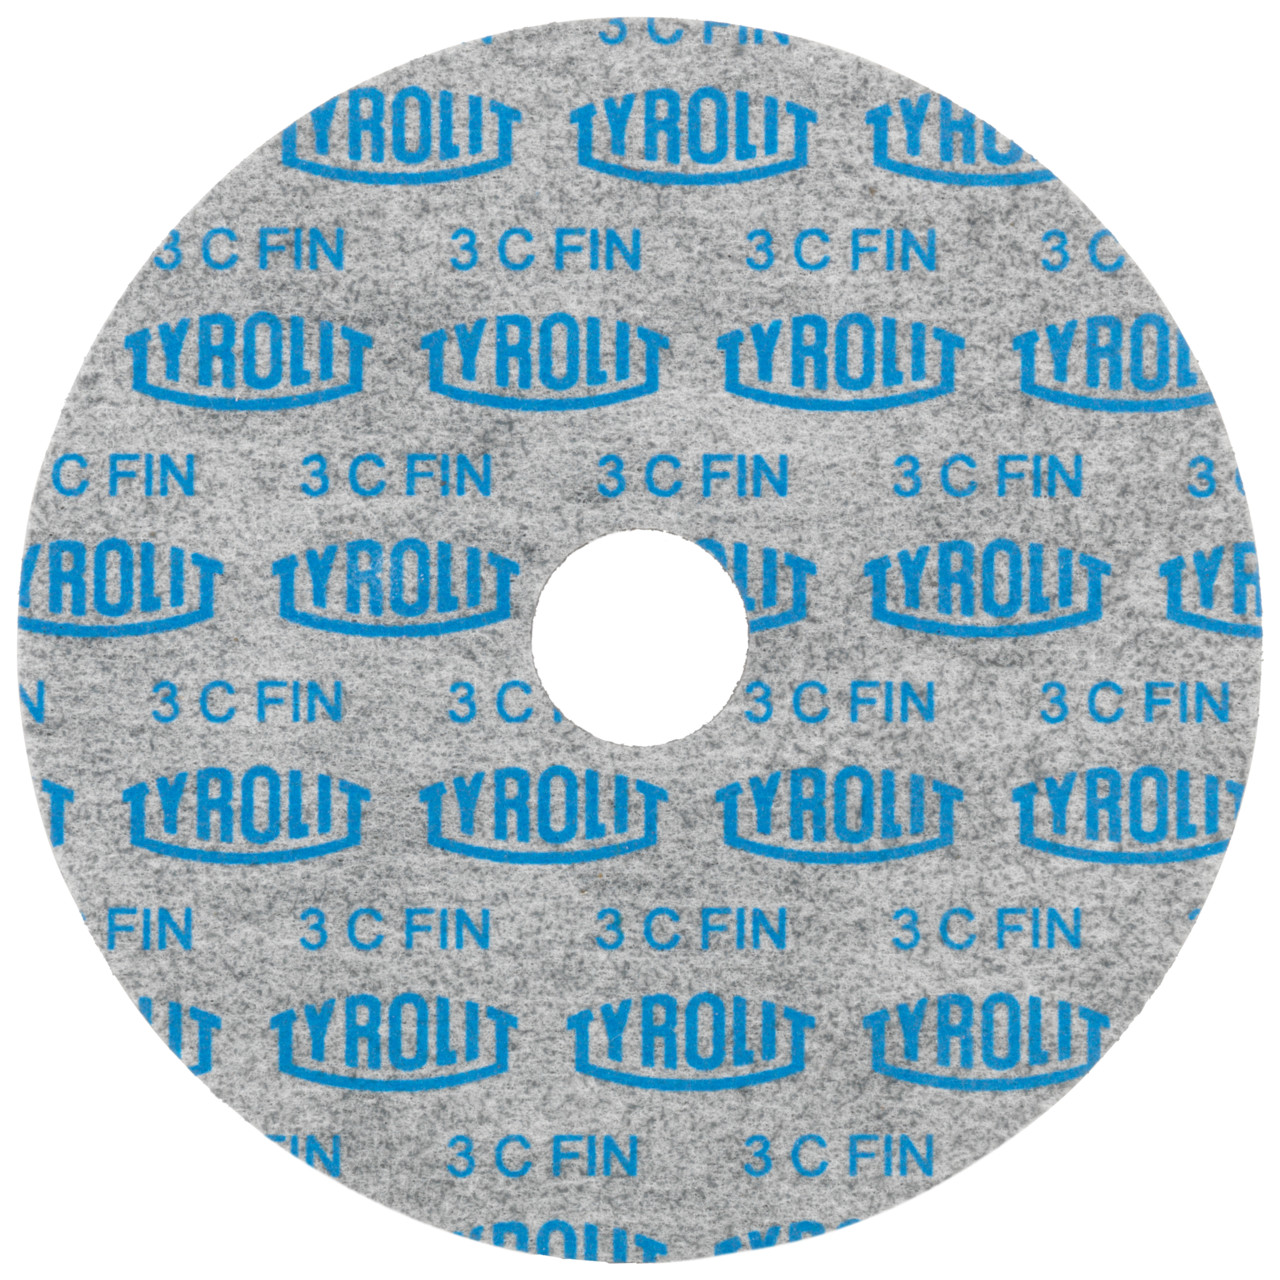 Tyrolit Compact disc pressati DxDxH 152x3x25.4 Utilizzabile universalmente, 6 C FEIN, forma: 1, Art. 34190210